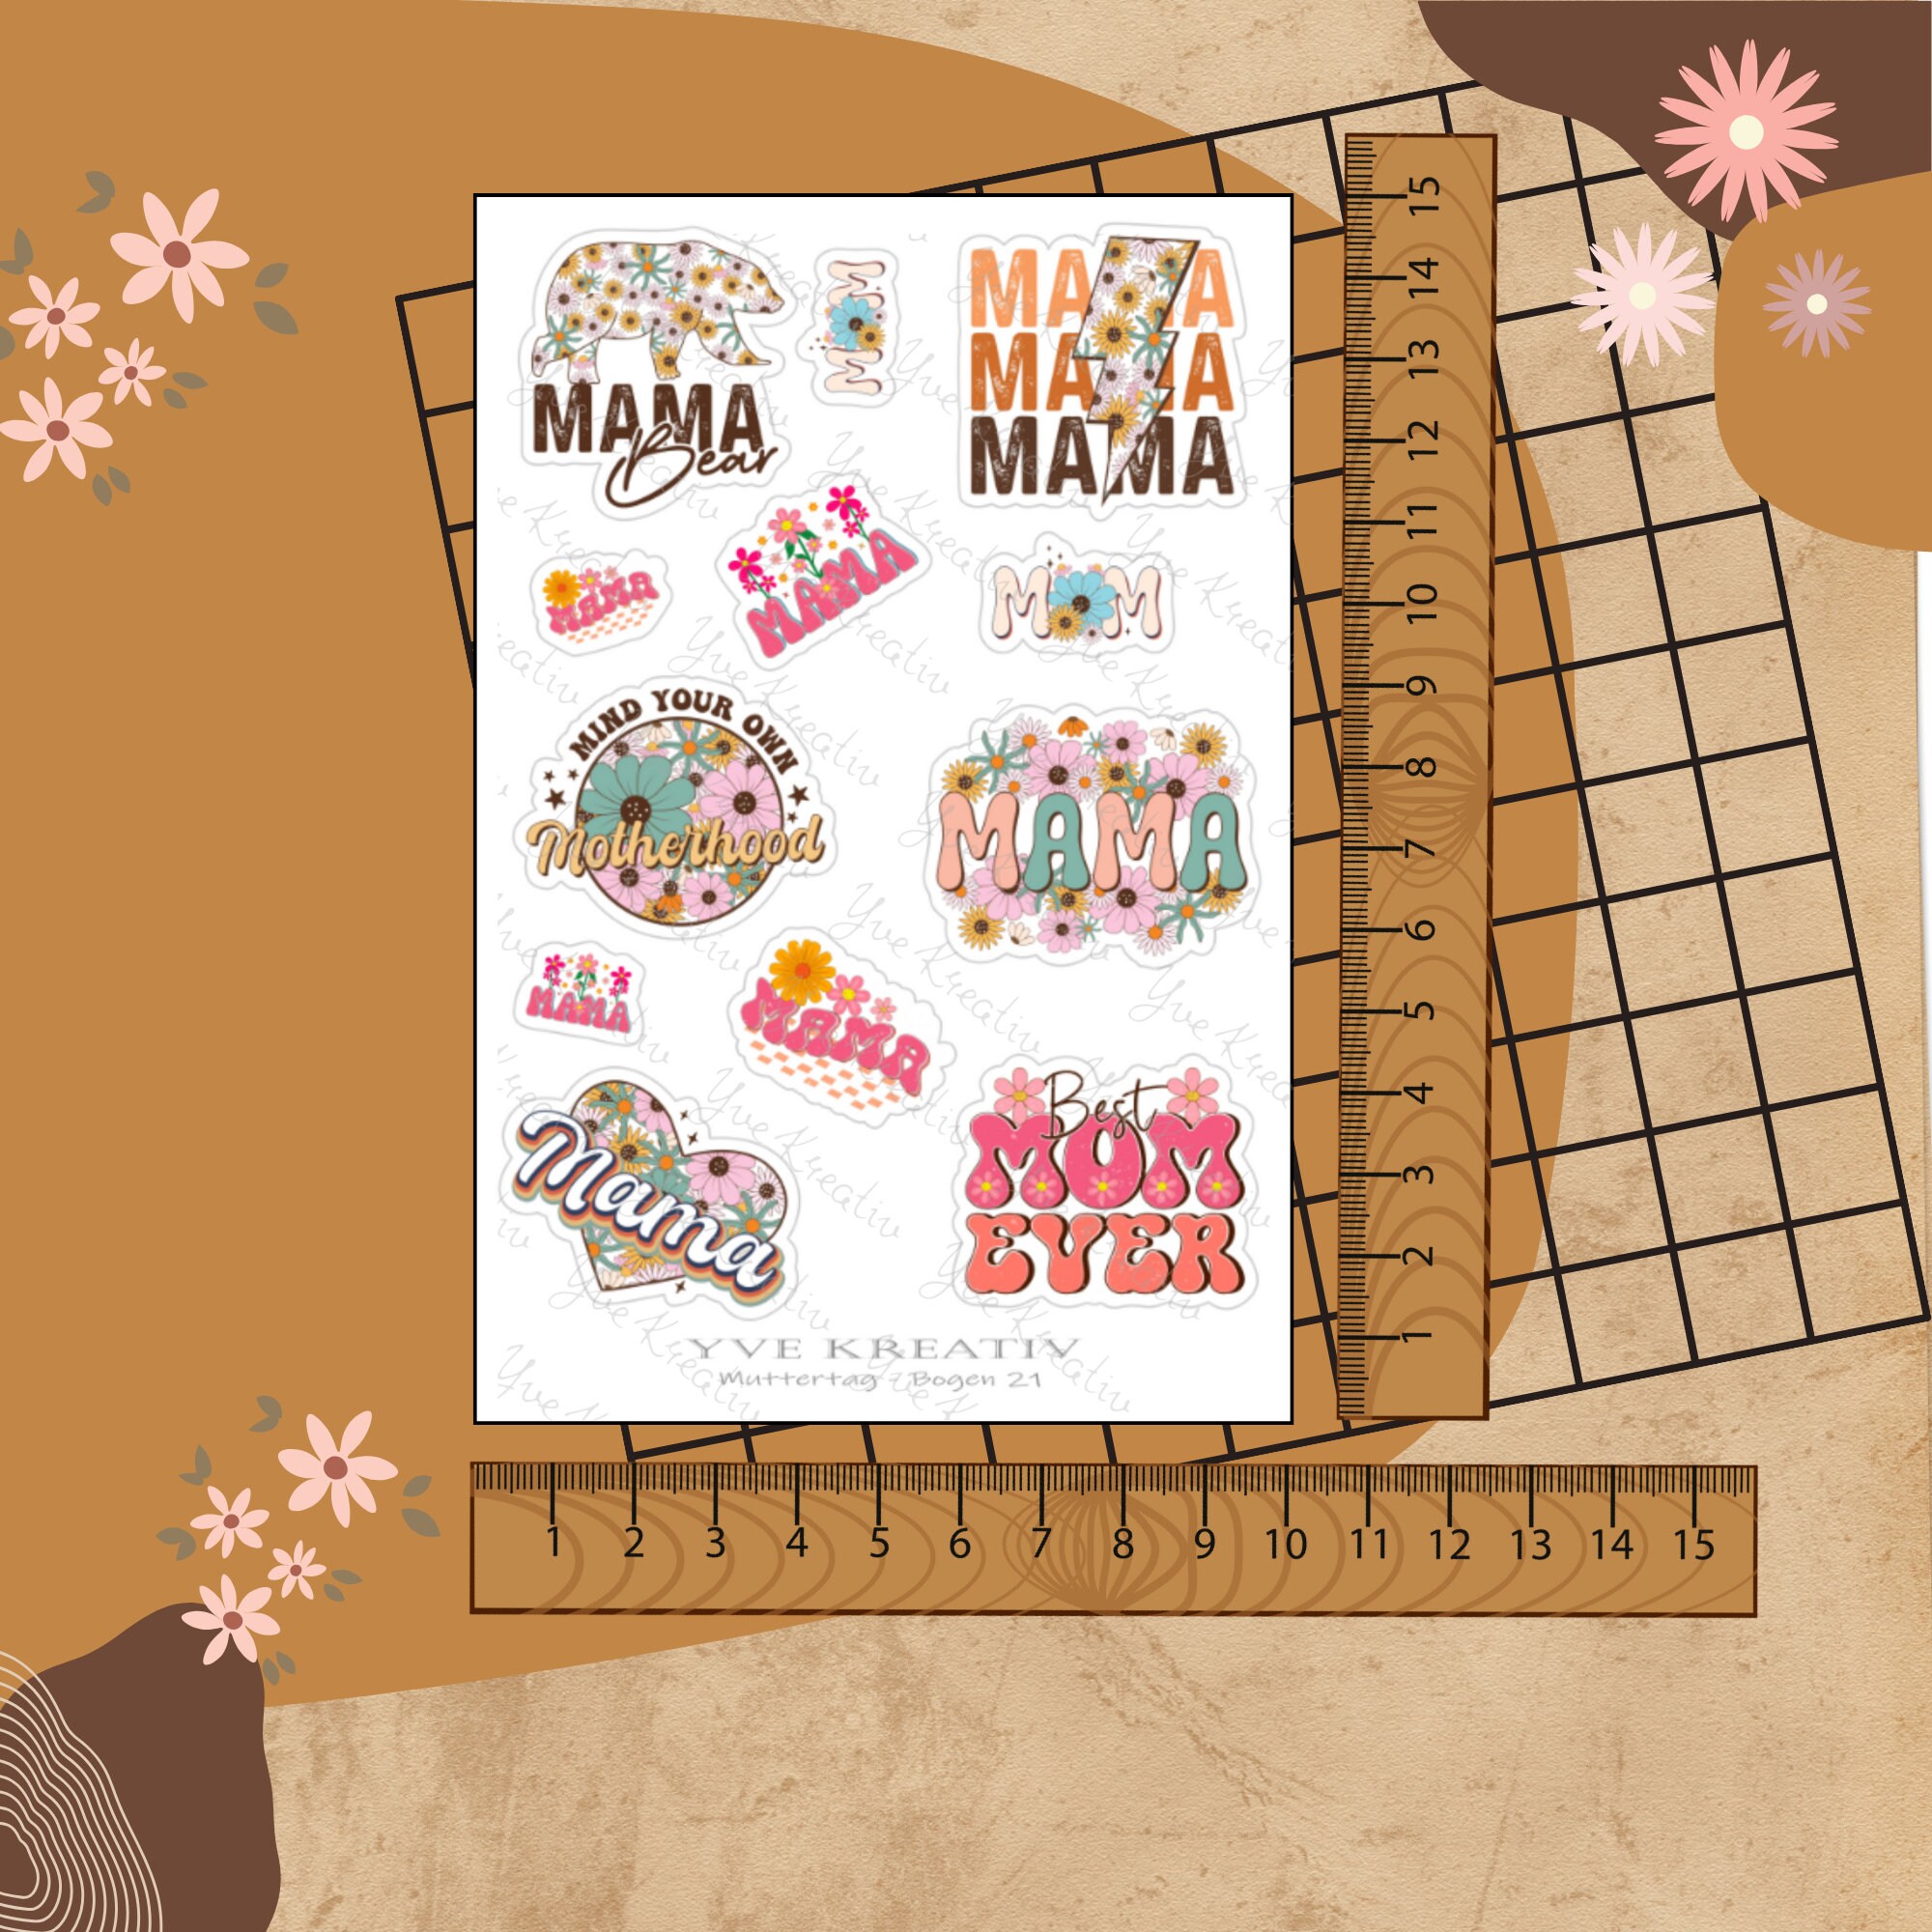 Sticker Bogen " Muttertag Best Mom " | Sticker Set - Aufkleber 3 Stickerbogen zur Auswahl in Weiß - Transparent - Matt - Glanz